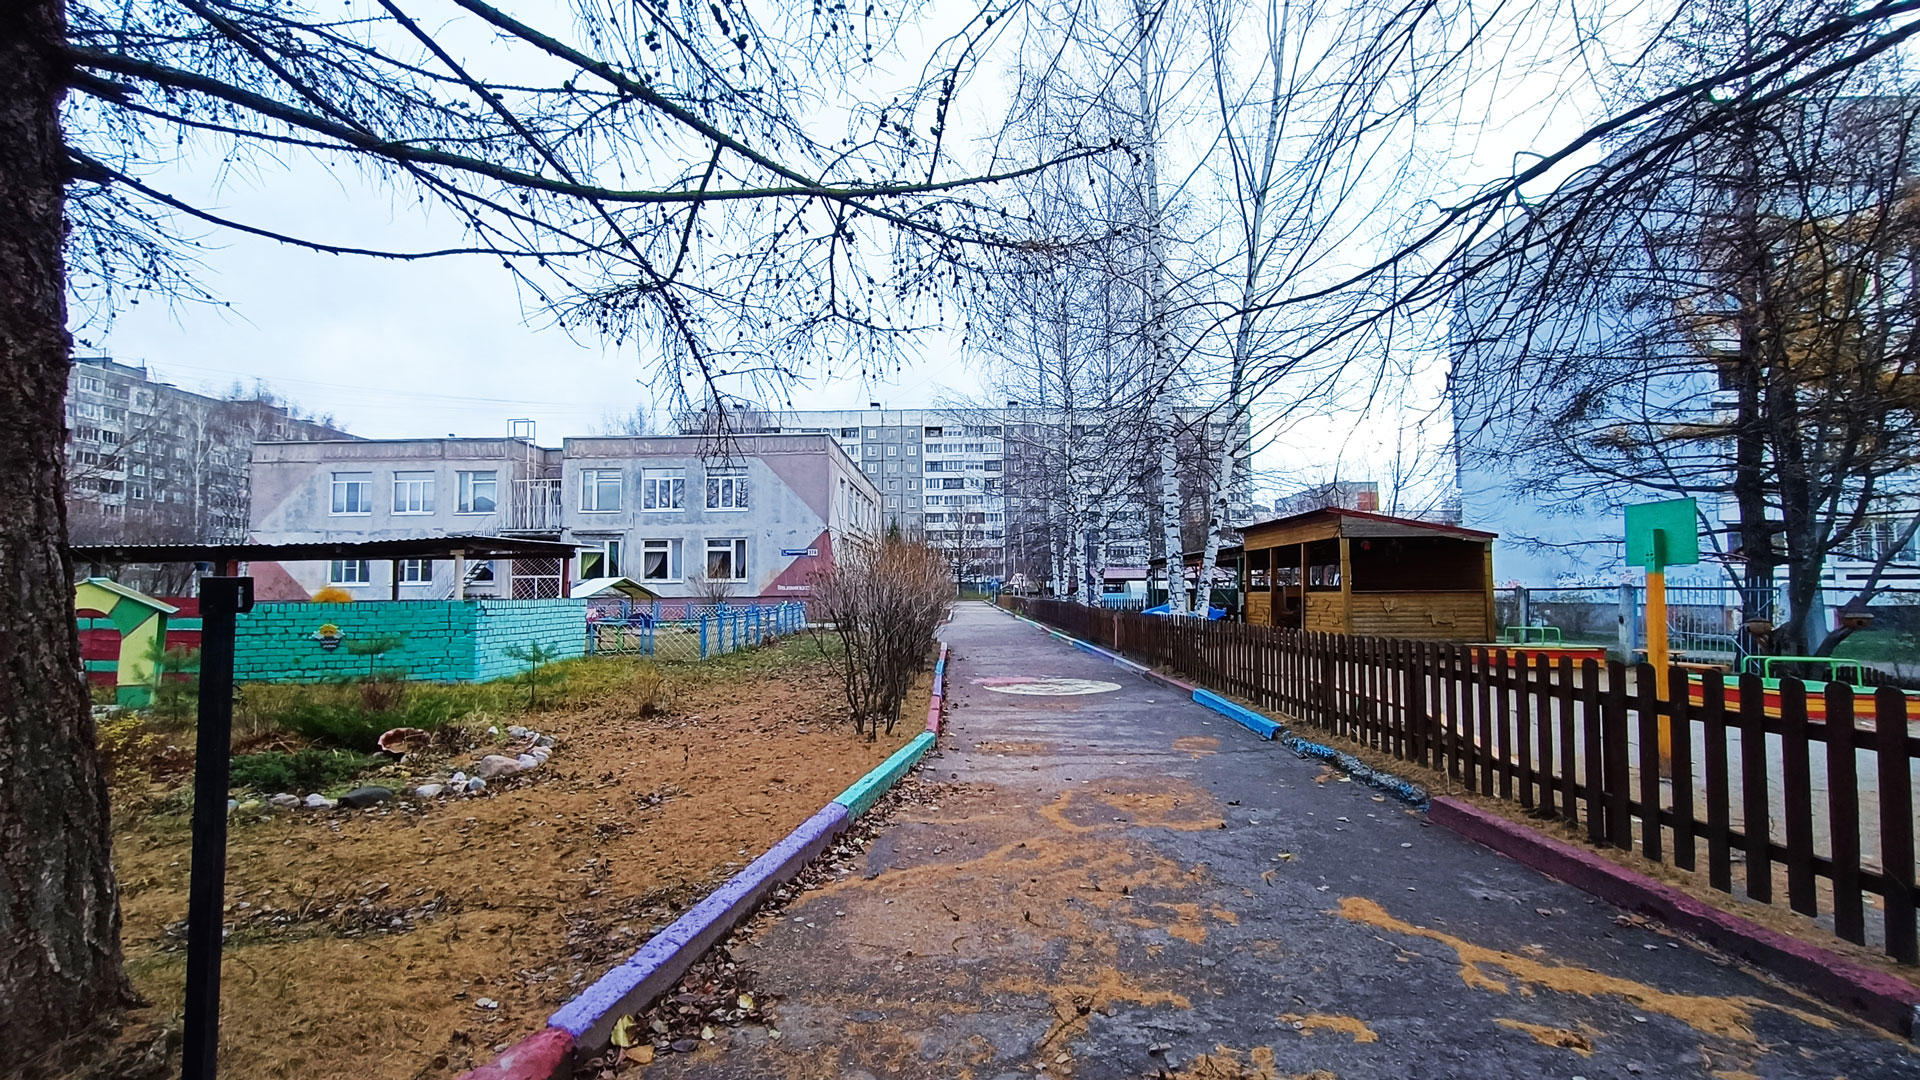 Детский сад 203 Ярославль: общий вид территории и здания.